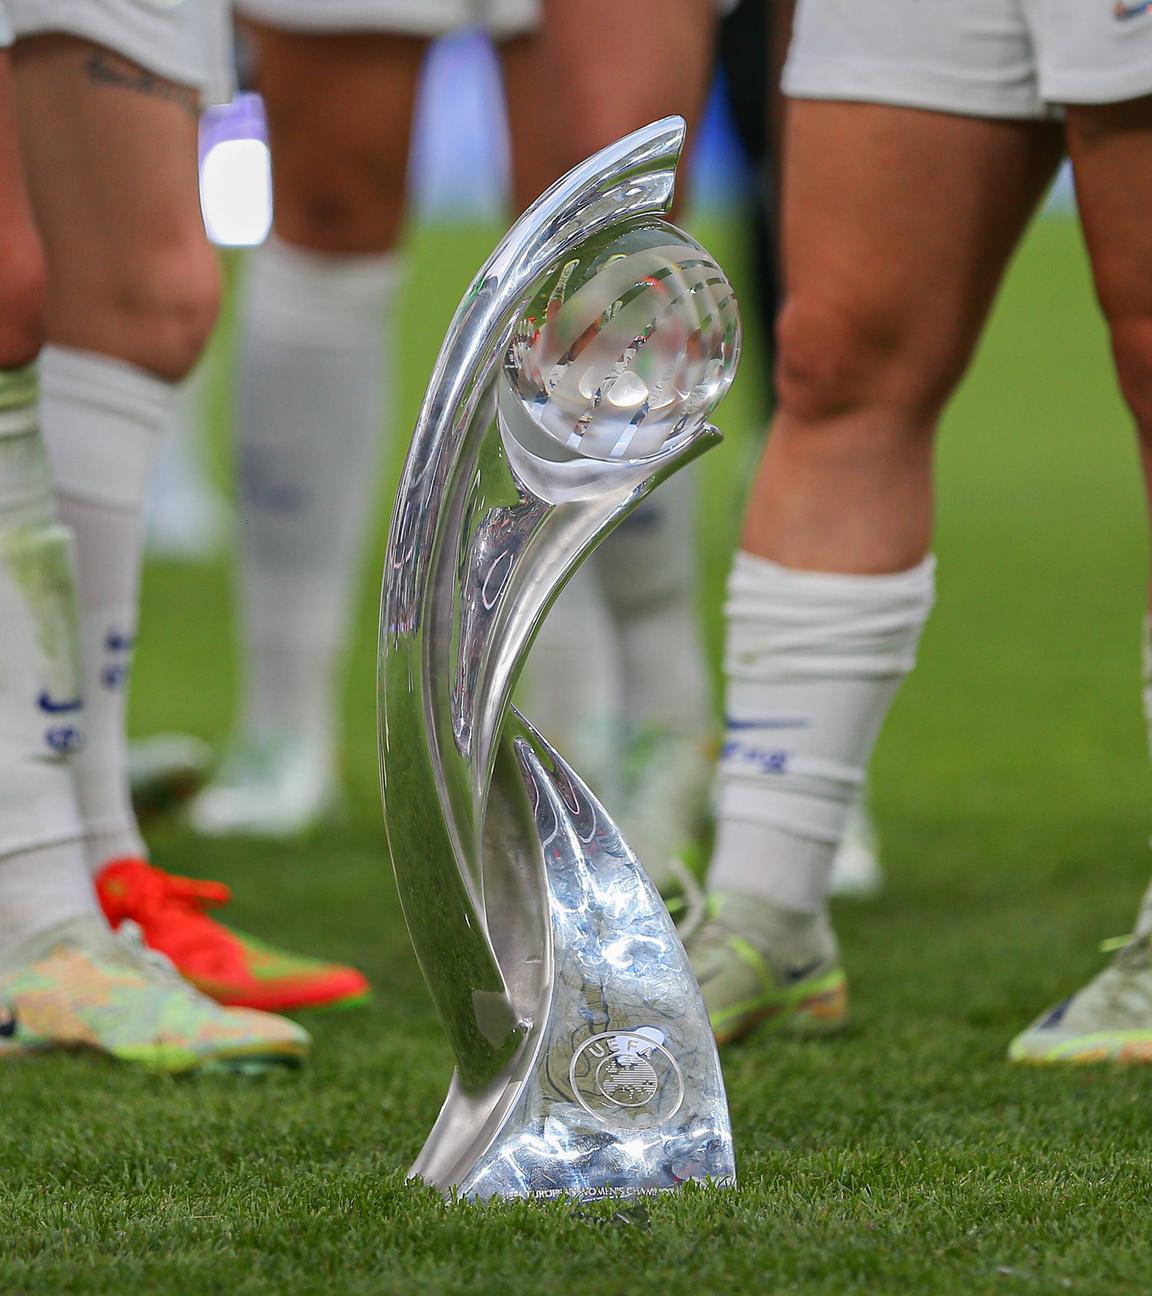 Großbritannien, Manchester: Pokal der Frauen Fußball-EM 2022